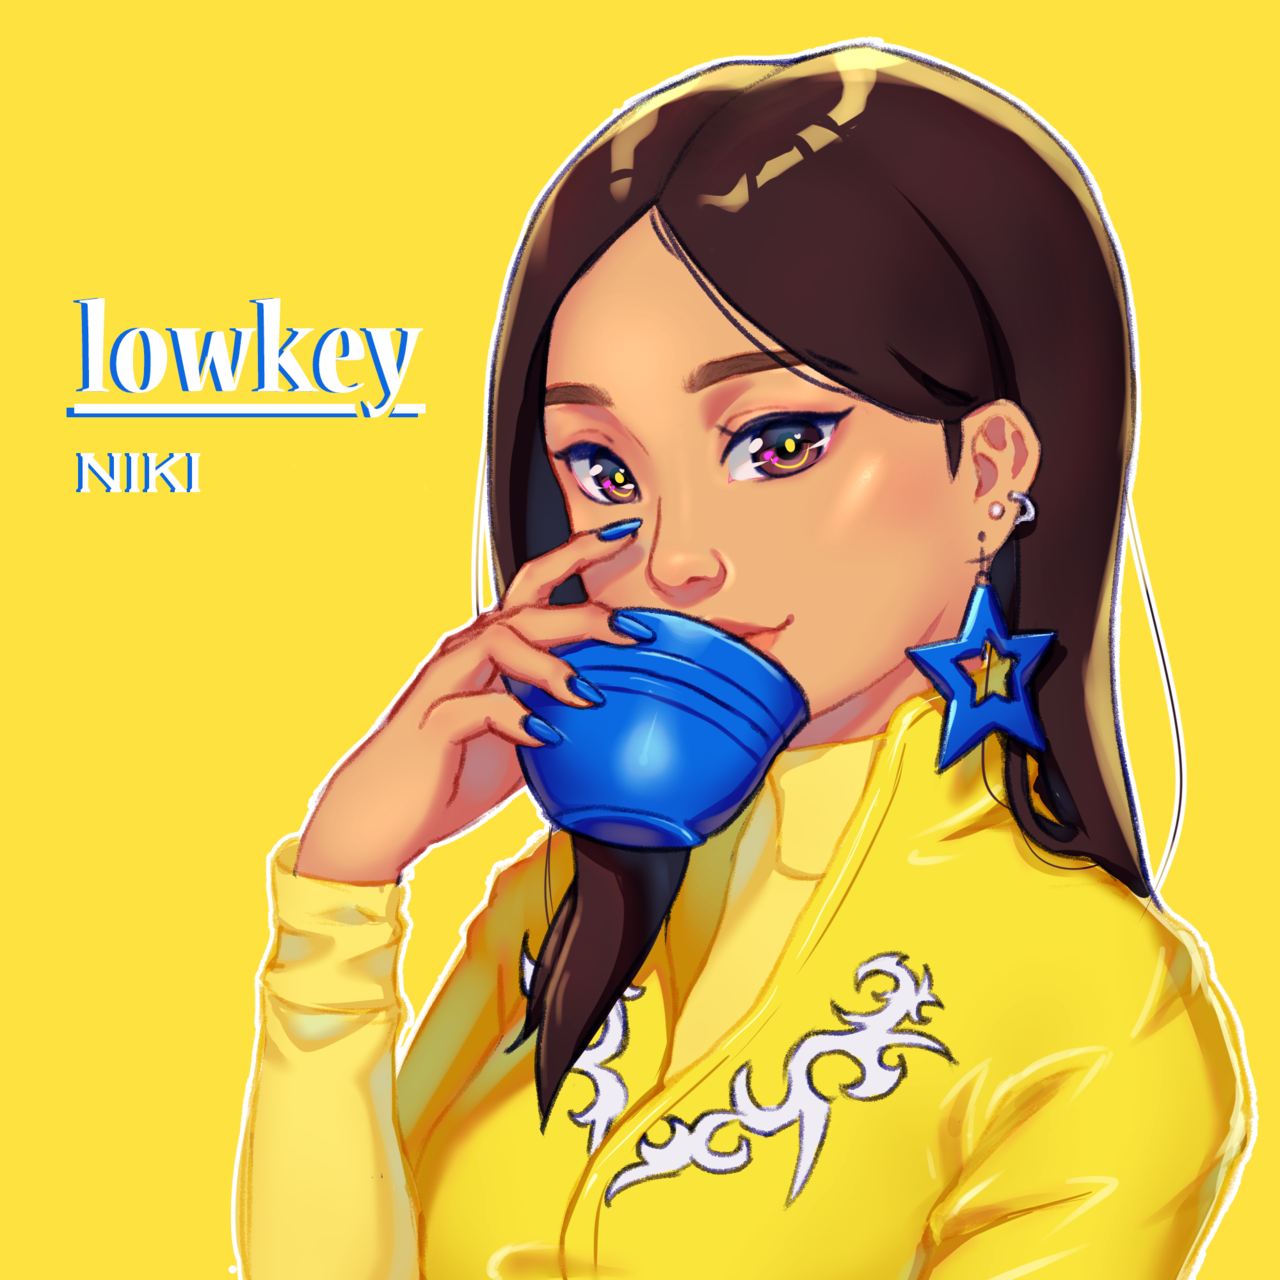 Năm 2019, từ lowkey xuất hiện trong ca khúc cùng tên Lowkey của ca sĩ NIKI cũng mang nghĩa là một lời đề nghị giữ bí mật